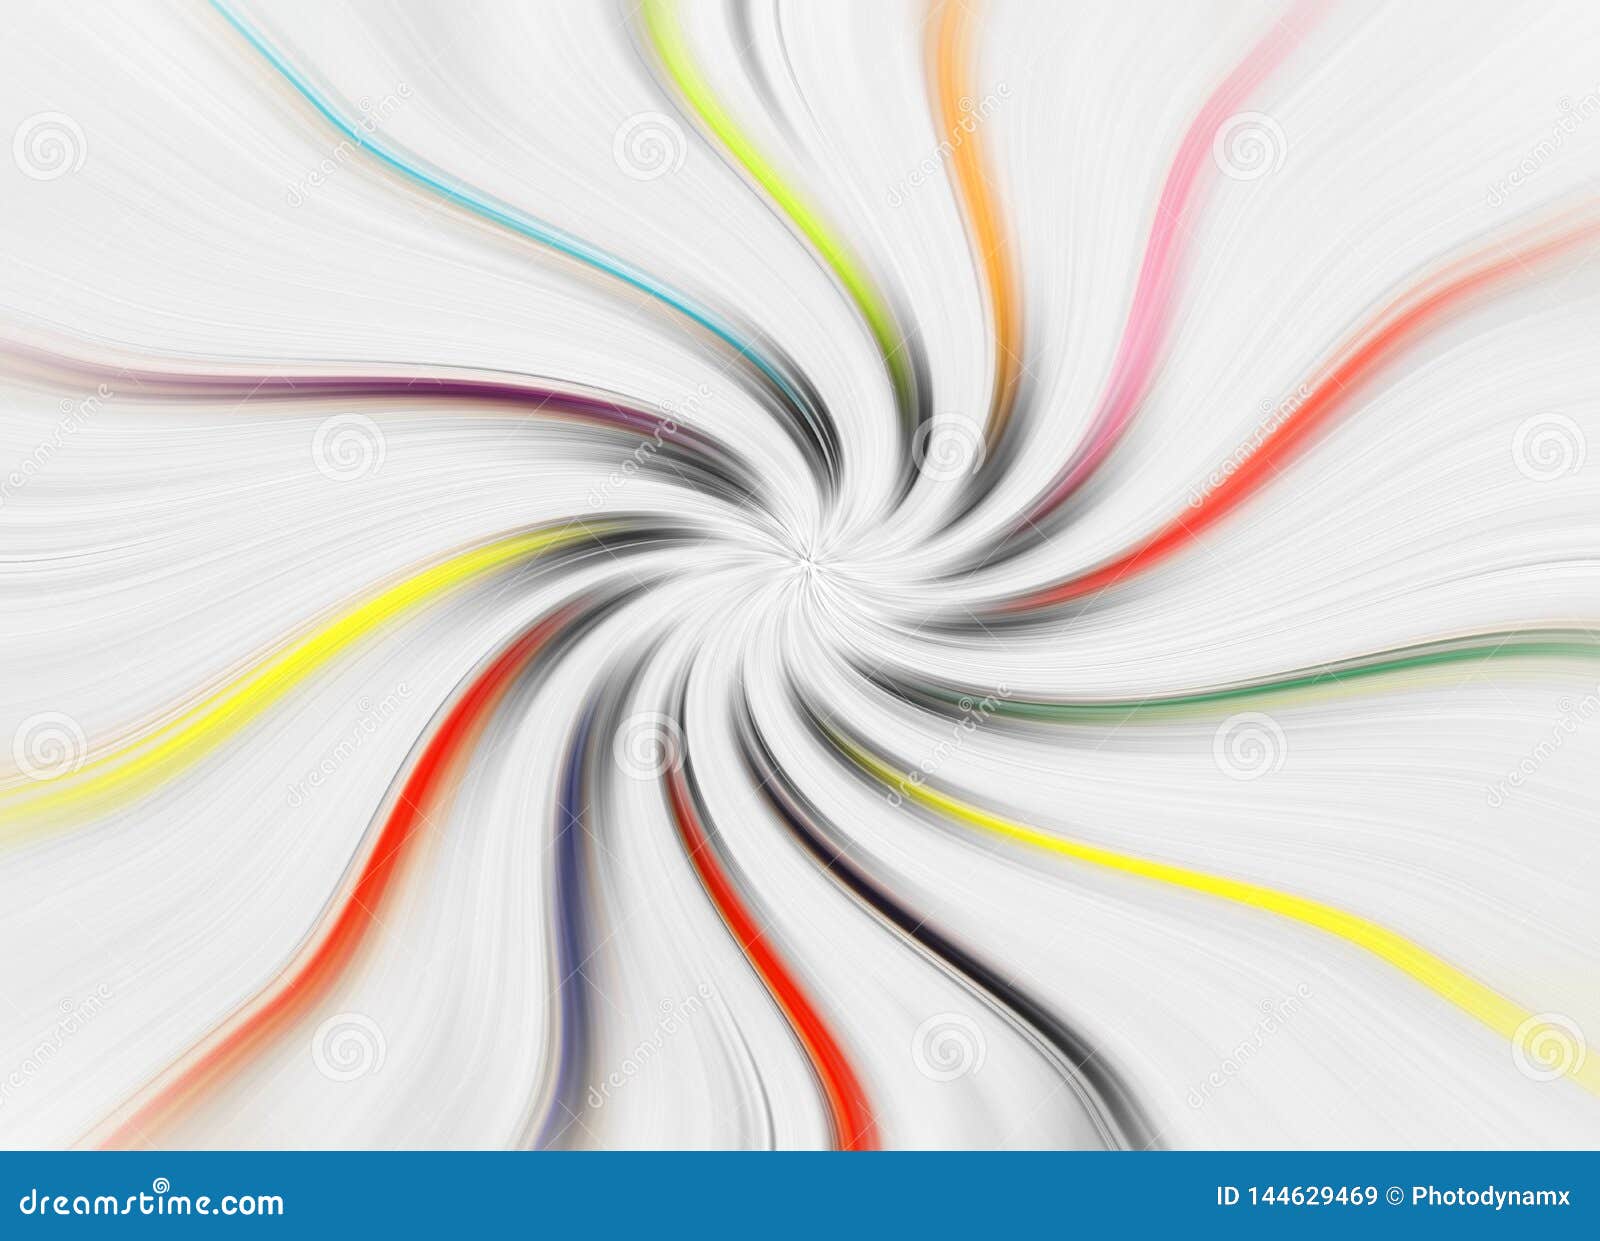 background swirls twirls colours vortex spinning wavy waves